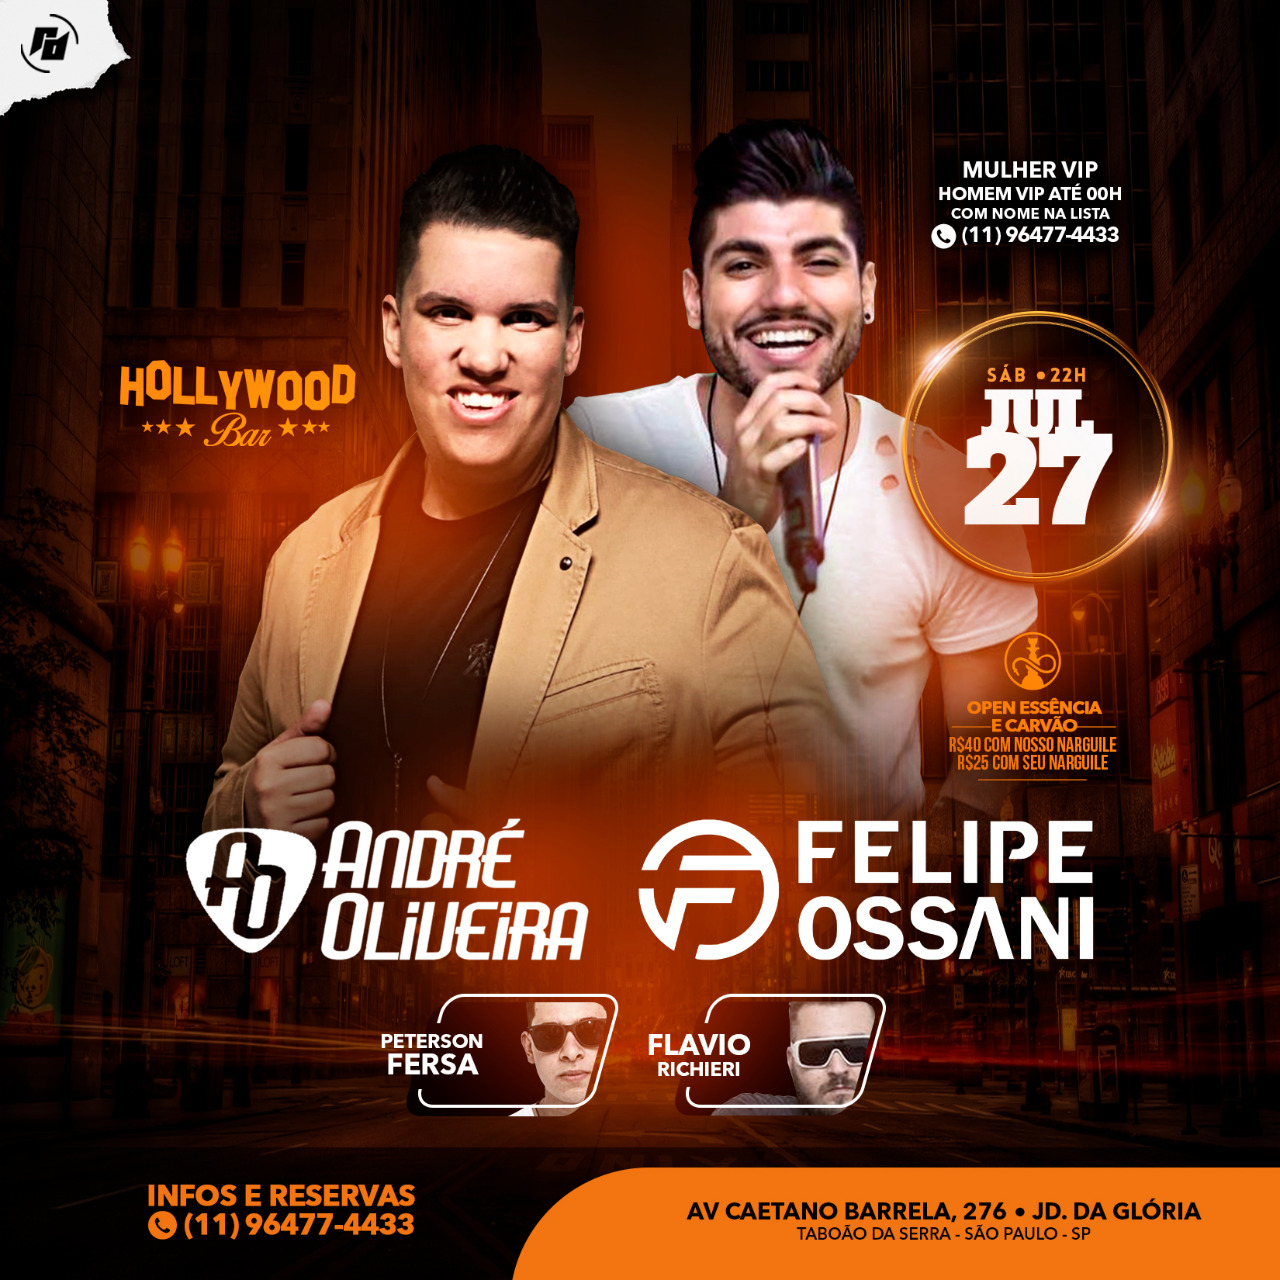 Hollywood Bar: Sábado 27/07 -  Sertanejo Felipe Ossani e André Oliveira